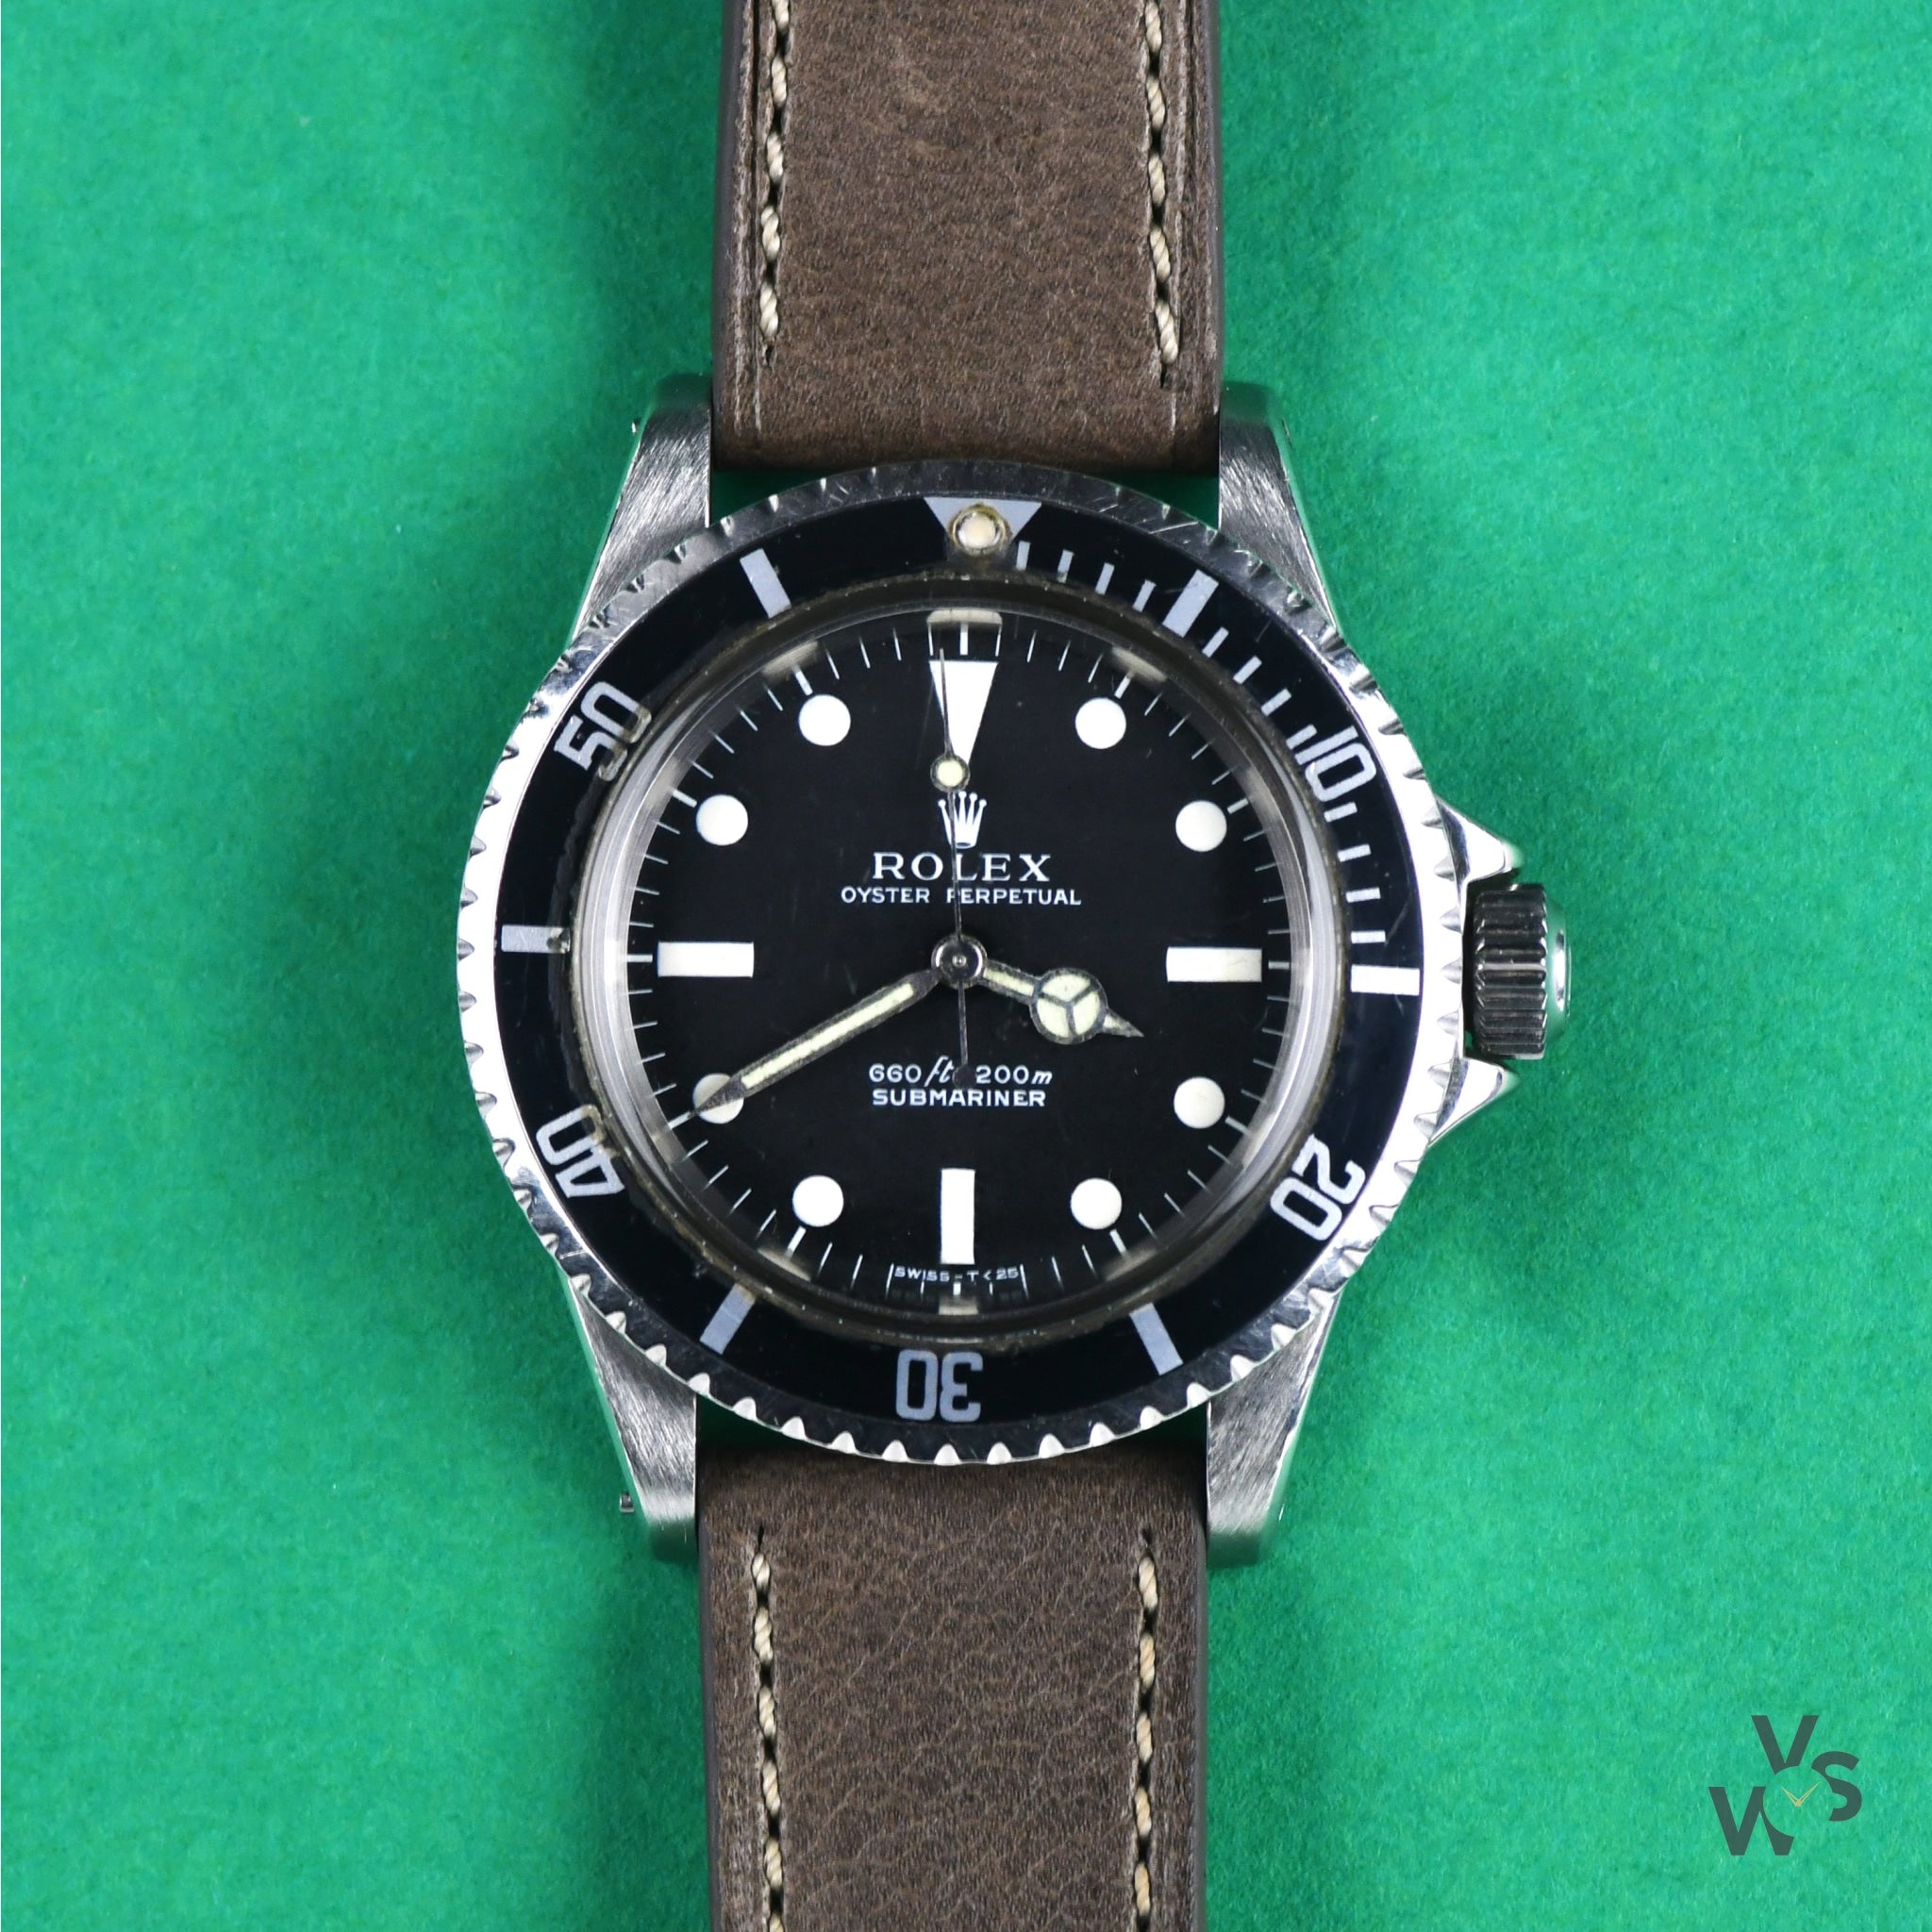 Rolex Submariner 5513 Plexi Glass Vintage 1966 - UK Specialist Watches